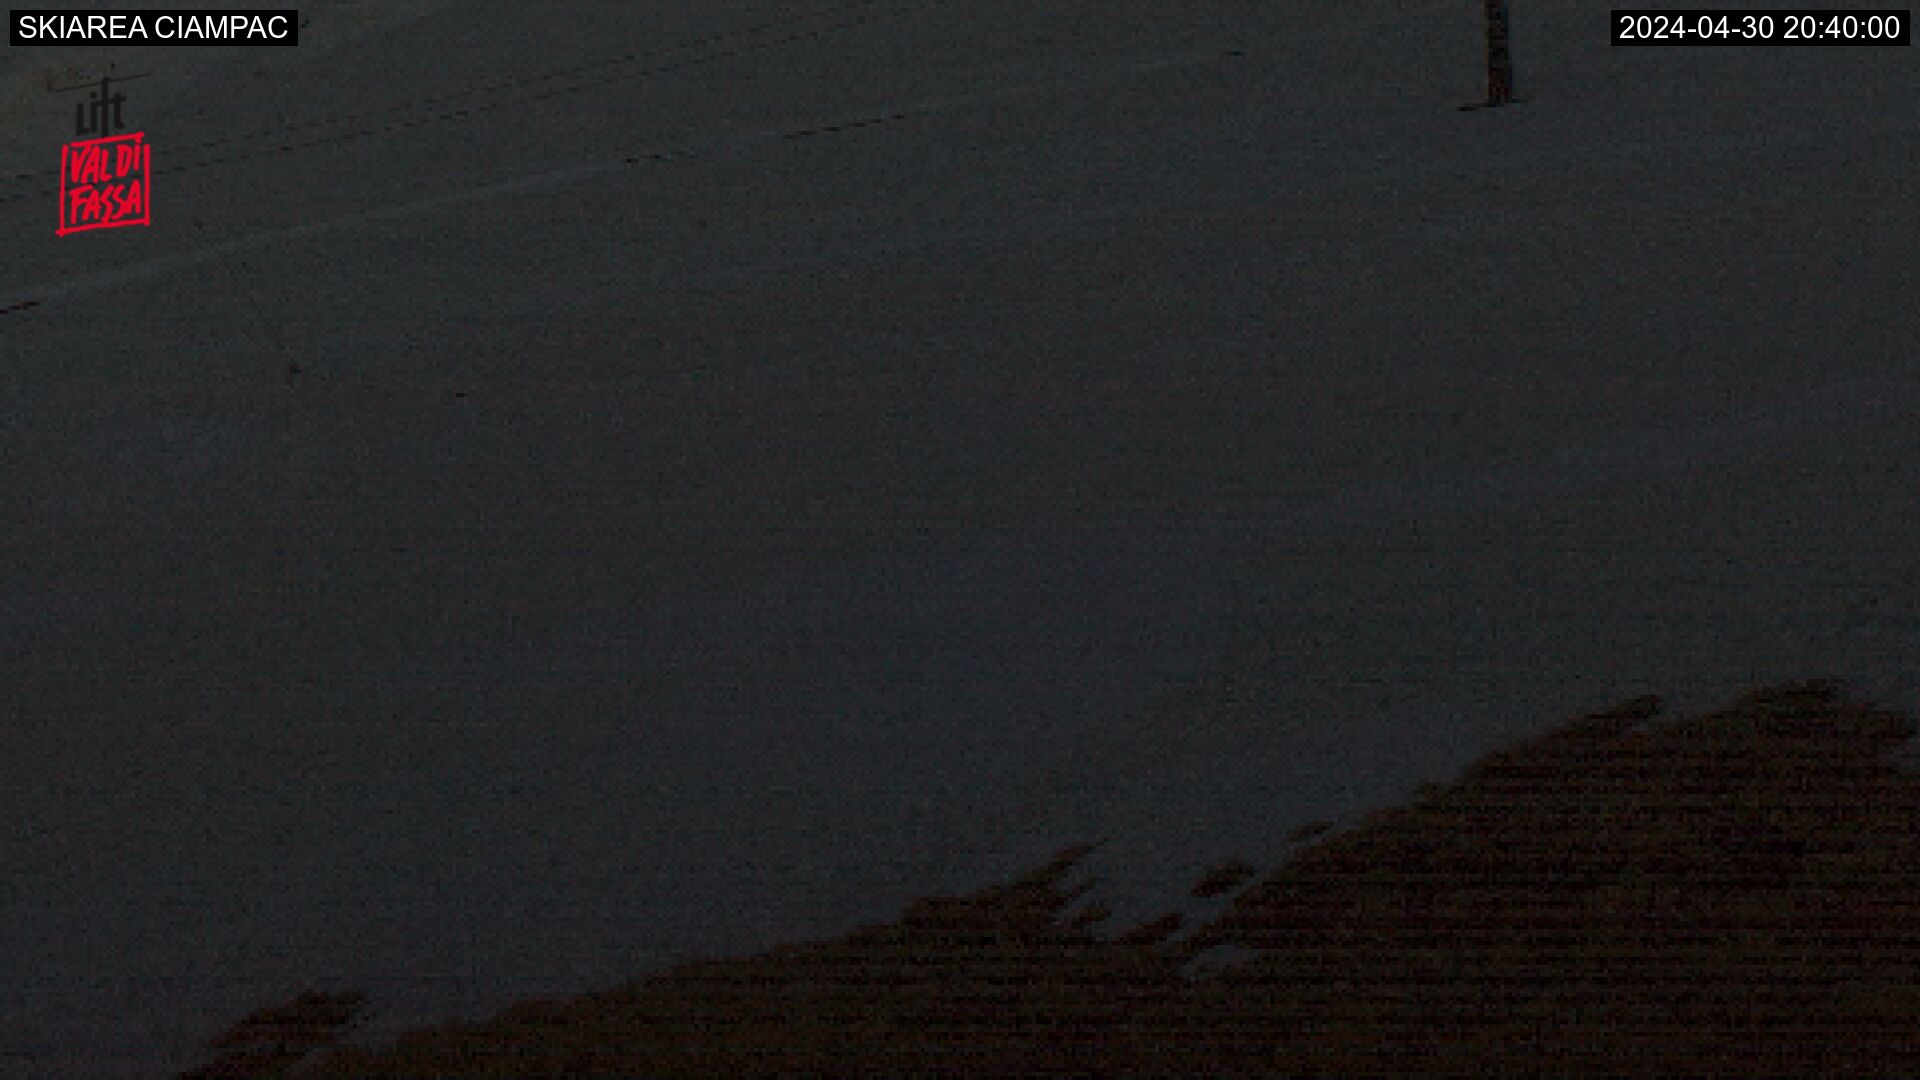 Webcam interattiva Alba di Canazei - Ciampac - Altitudine: 2.100 metri<BR>Posizione: Ciampac <BR>Punto Panoramico: immagine panoramica delle piste e degli impianti di risalita dell’area sciistica del Ciampac (comprensorio Val di Fassa/Carezza). Cime e vette: da sinistra Sella Brunech, la Crepa Neigra, i bastioni del Sella con il Sass Pordoi ...